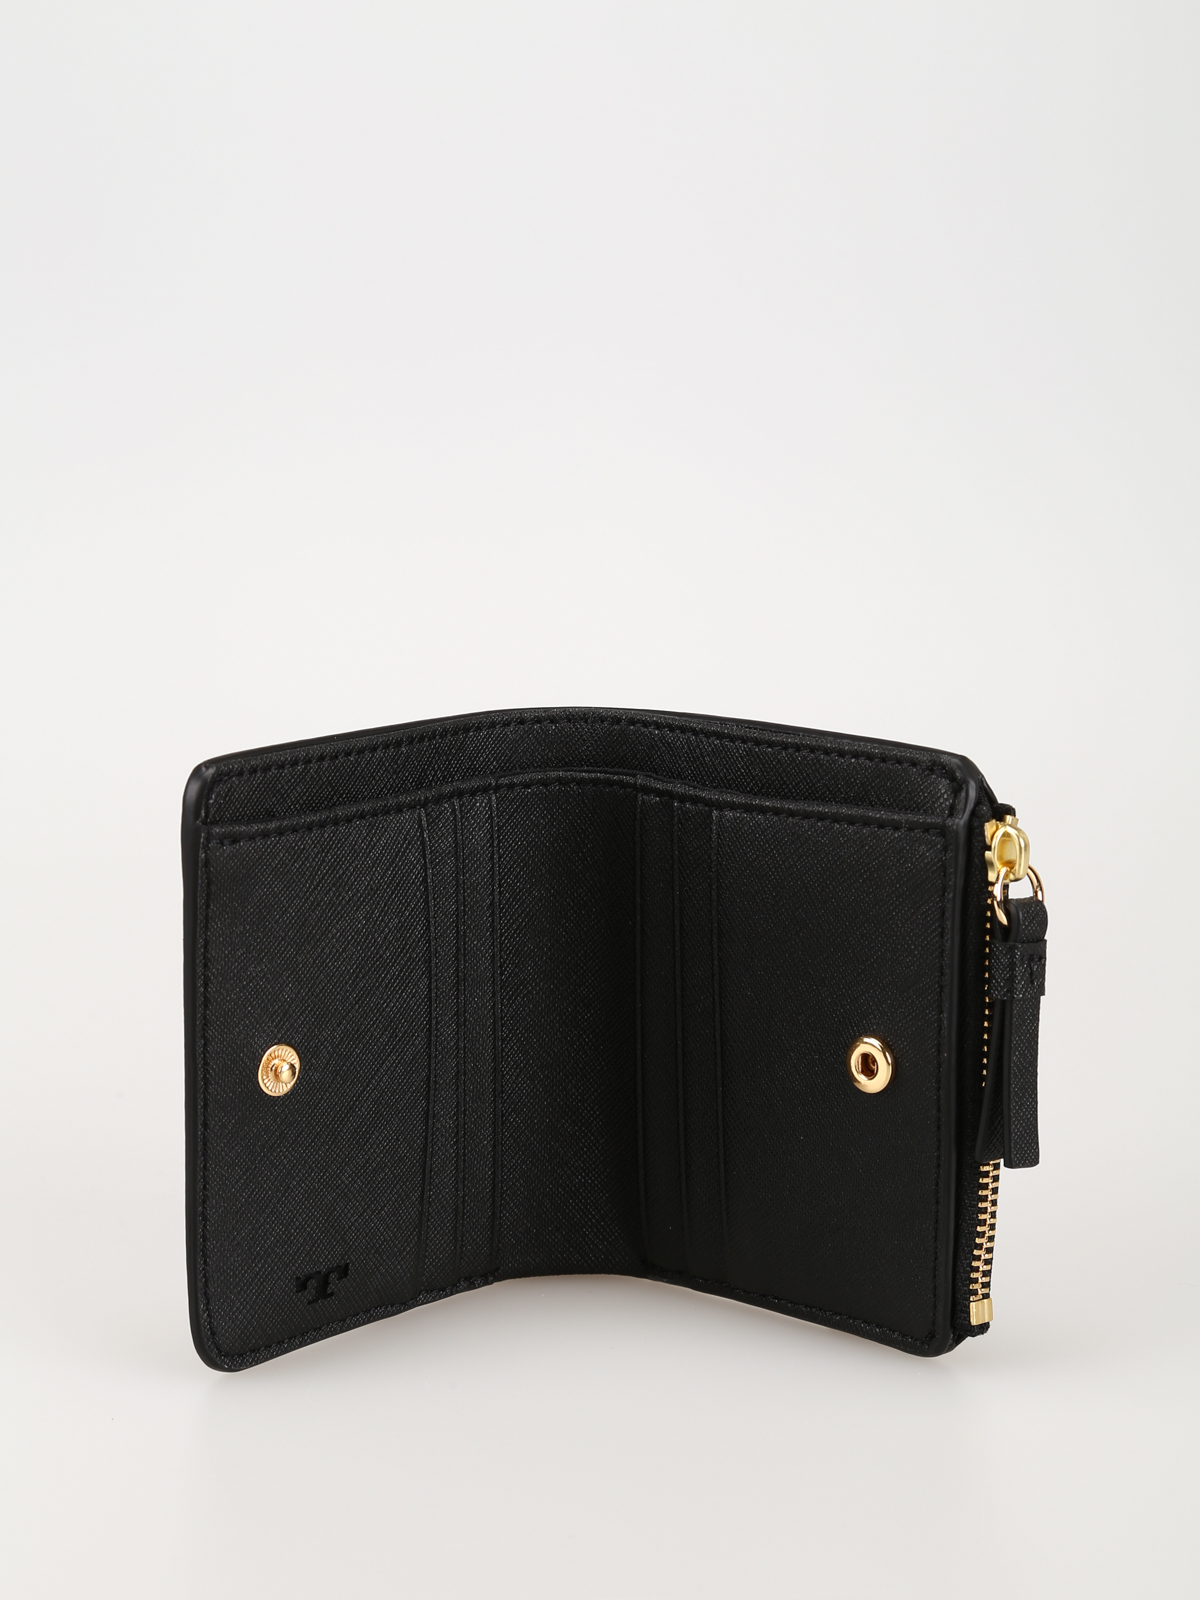 Robinson Mini Wallet: Women's Wallets & Card Cases, Wallets